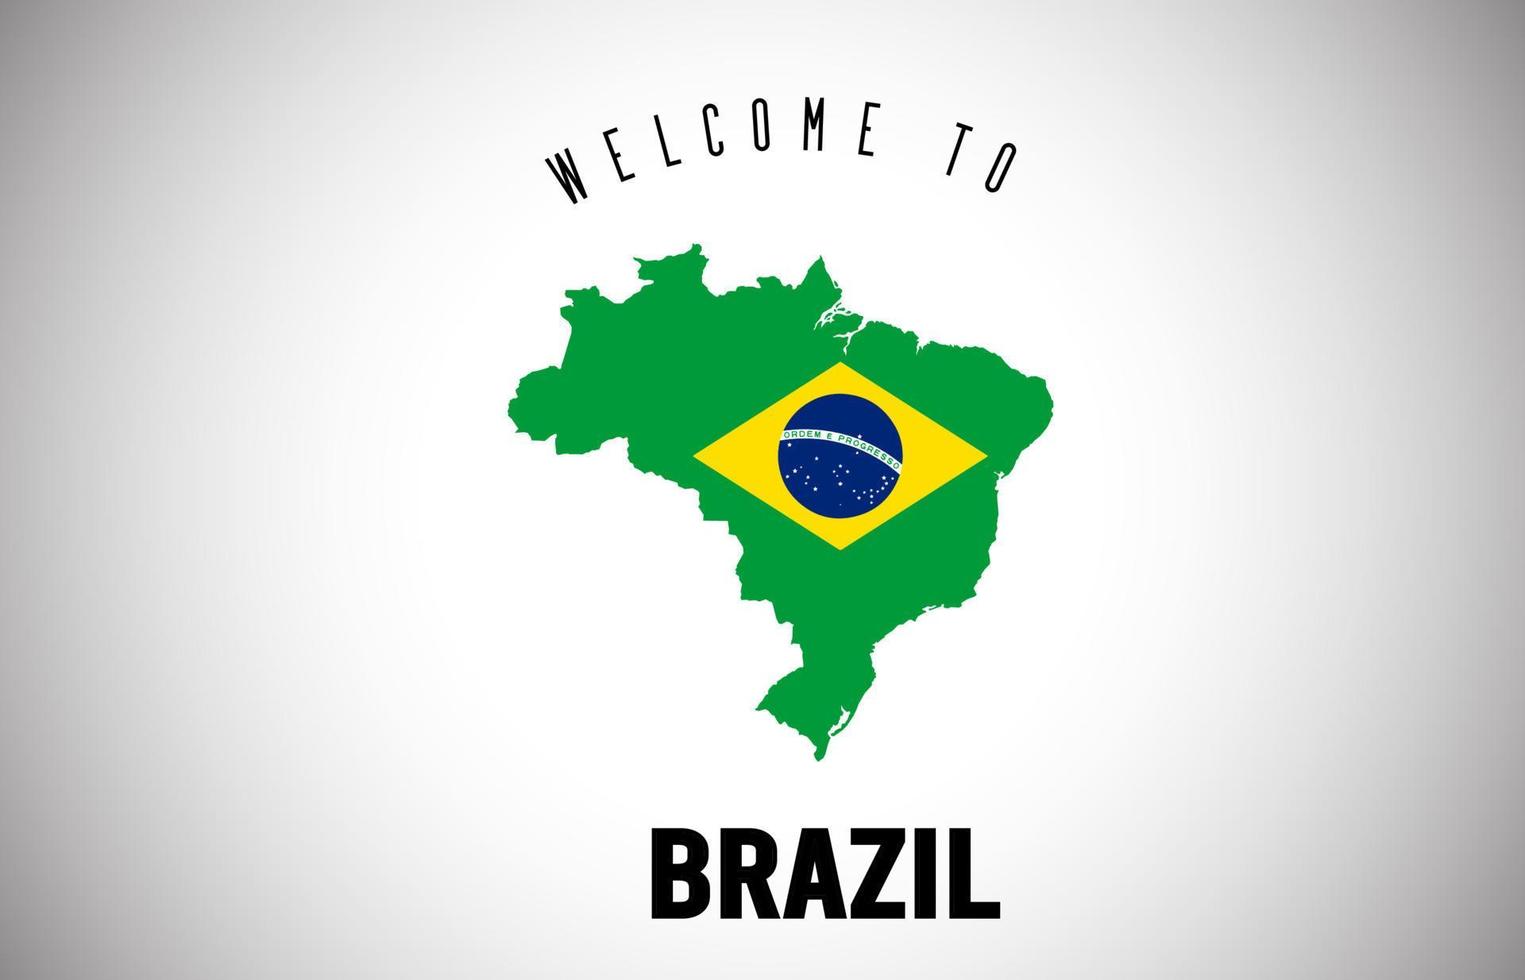 Brasil bienvenido al texto y la bandera del país dentro del diseño del vector del mapa de la frontera del país.